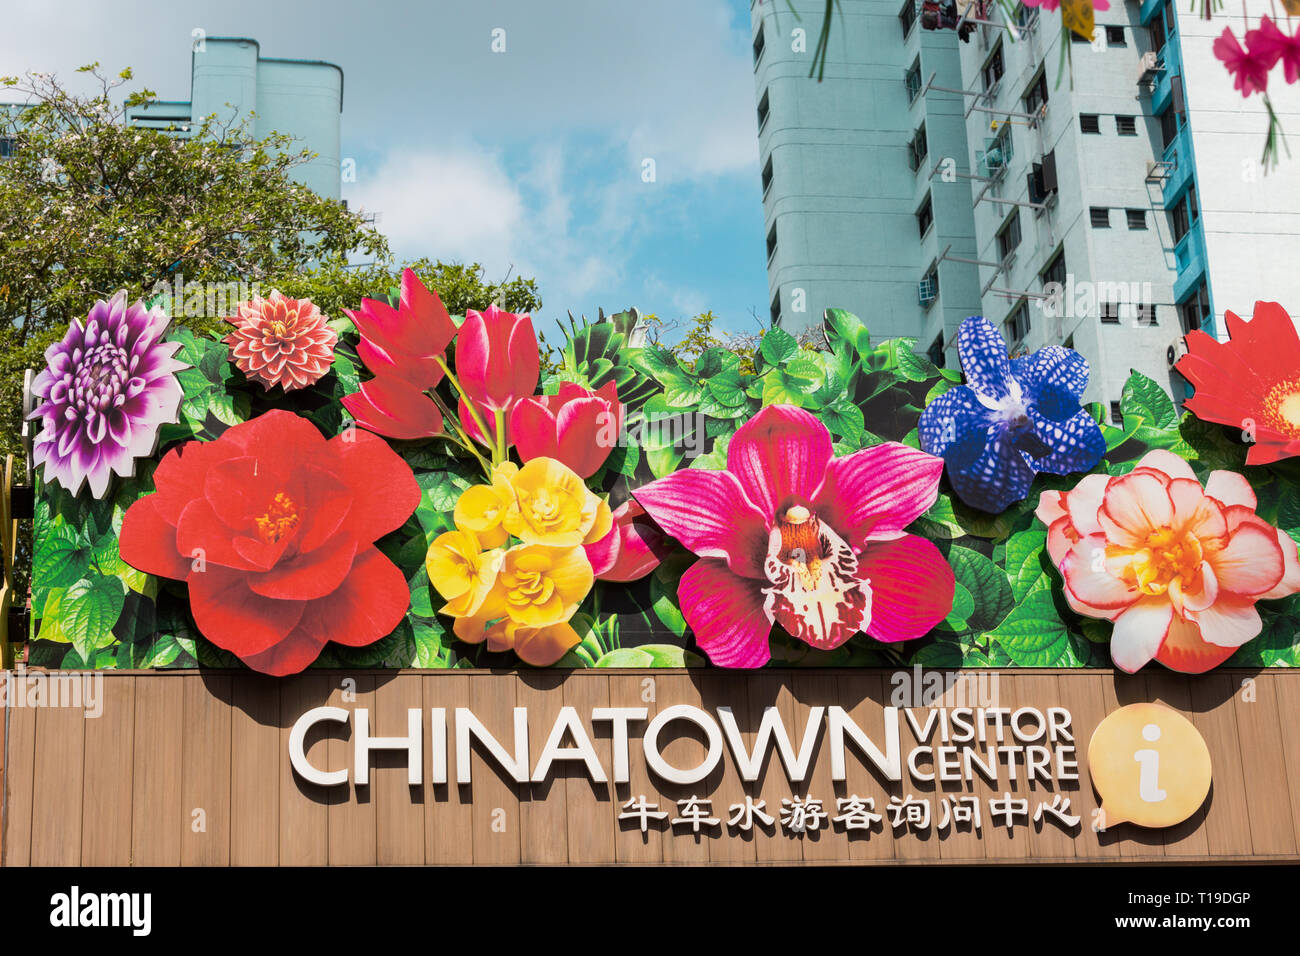 Außenansicht des Chinatown Visitor Centre, Singapur Stockfoto